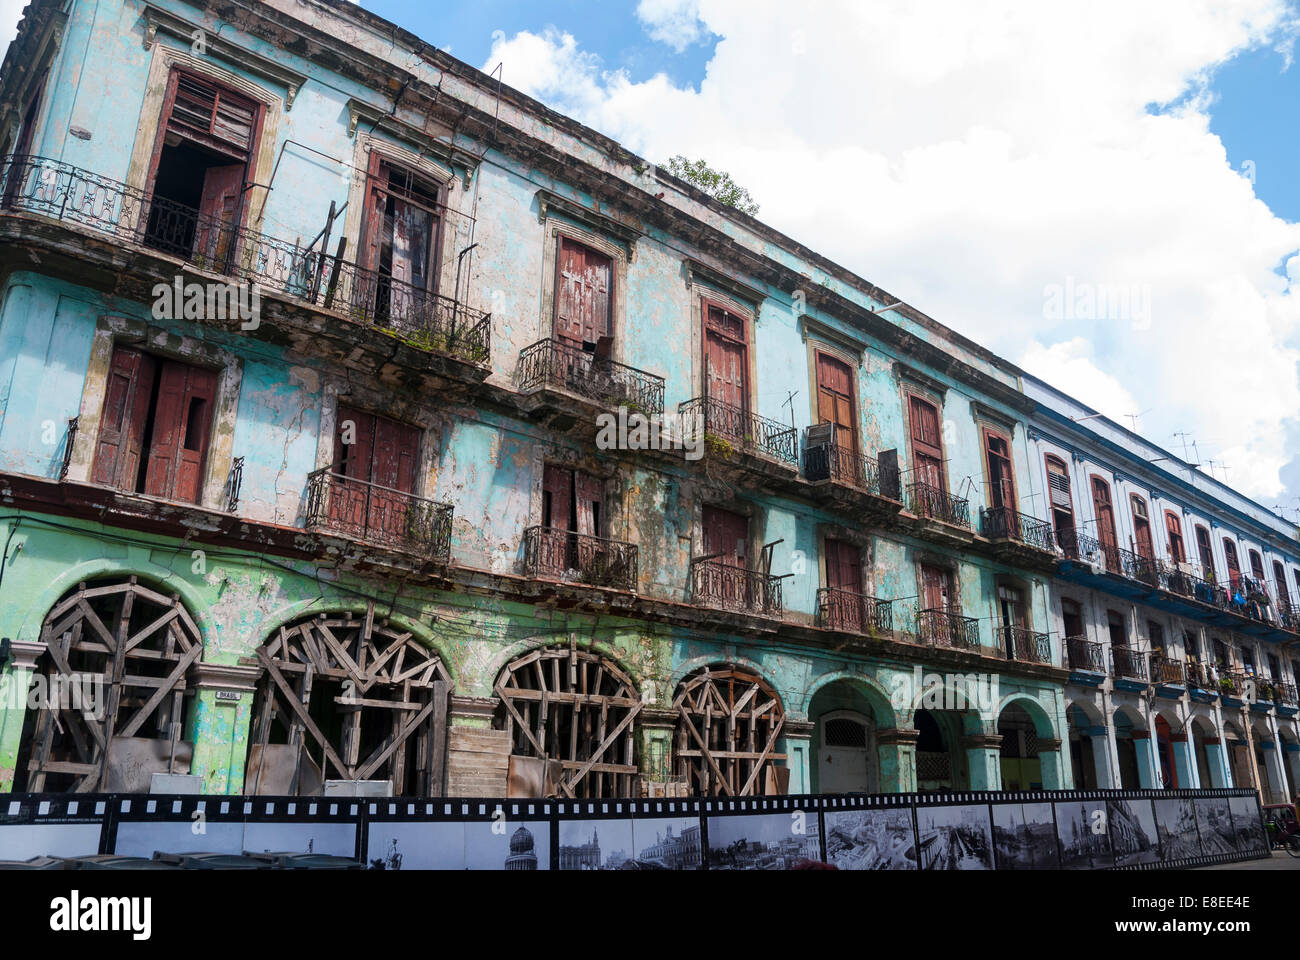 Une rangée d'immeubles délabrés dont certaines sont encore occupées dans une rue près de la capitale de Cuba La Havane en construction Banque D'Images